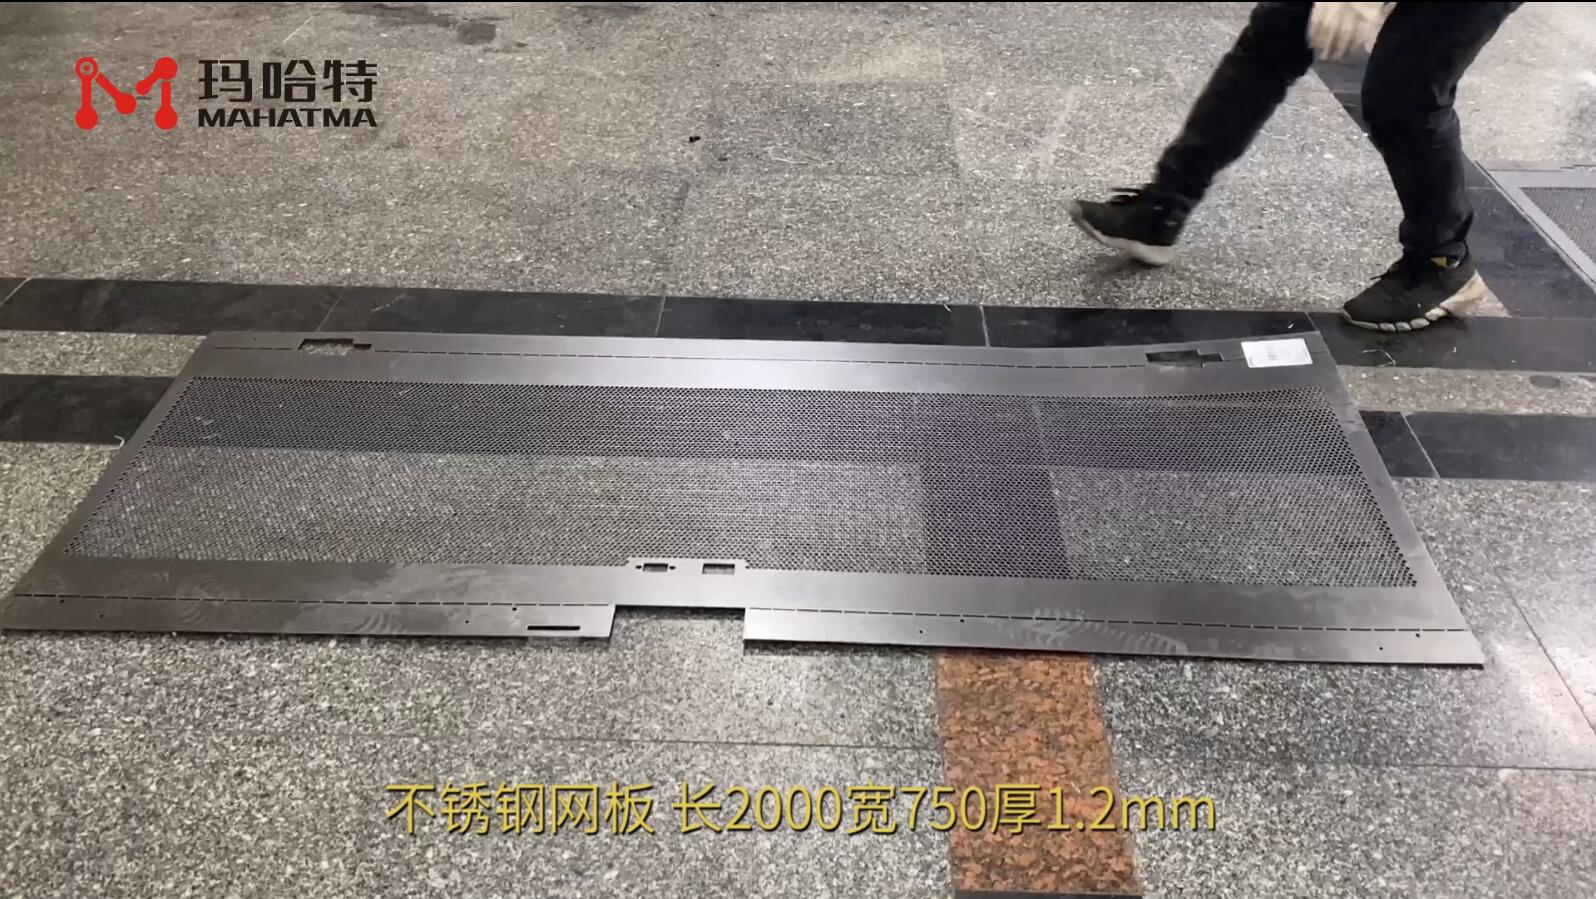 不锈钢 MHT40-1300 长方形 长2000宽750厚1.2mm